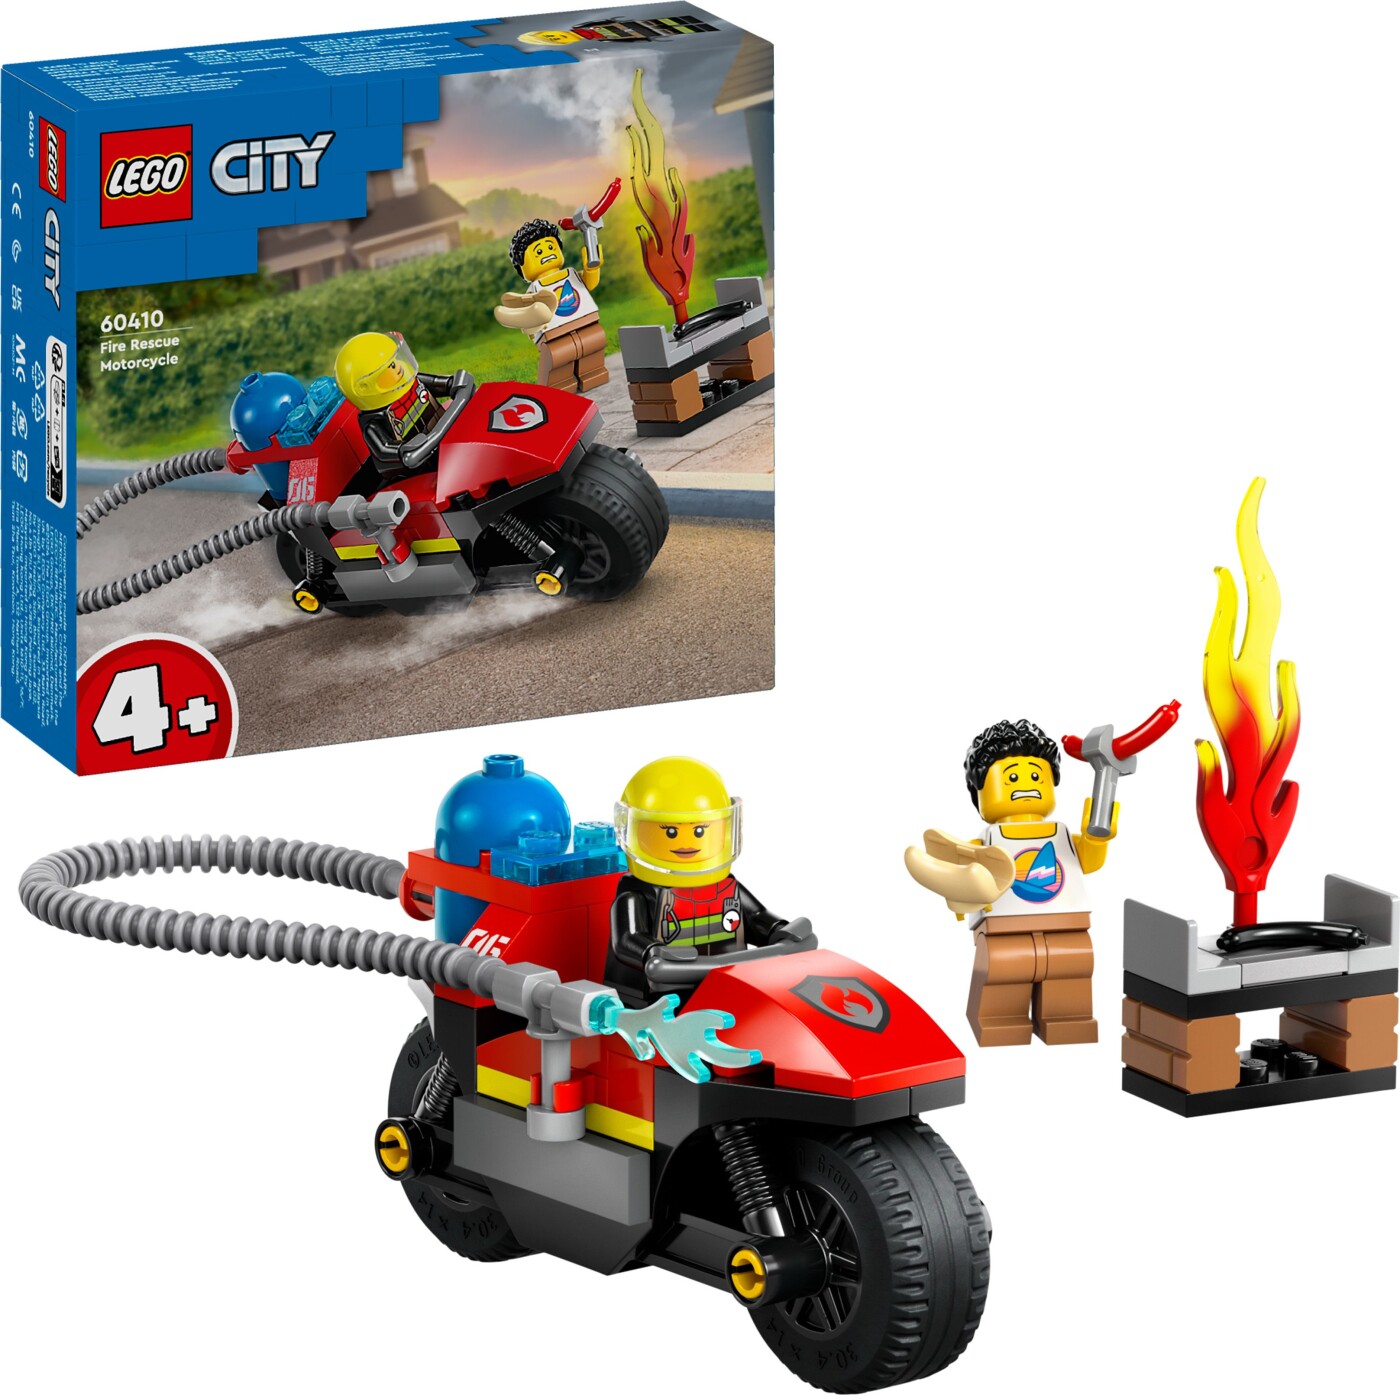 Billede af Lego City - Brandslukningsmotorcykel - 60410 hos Gucca.dk